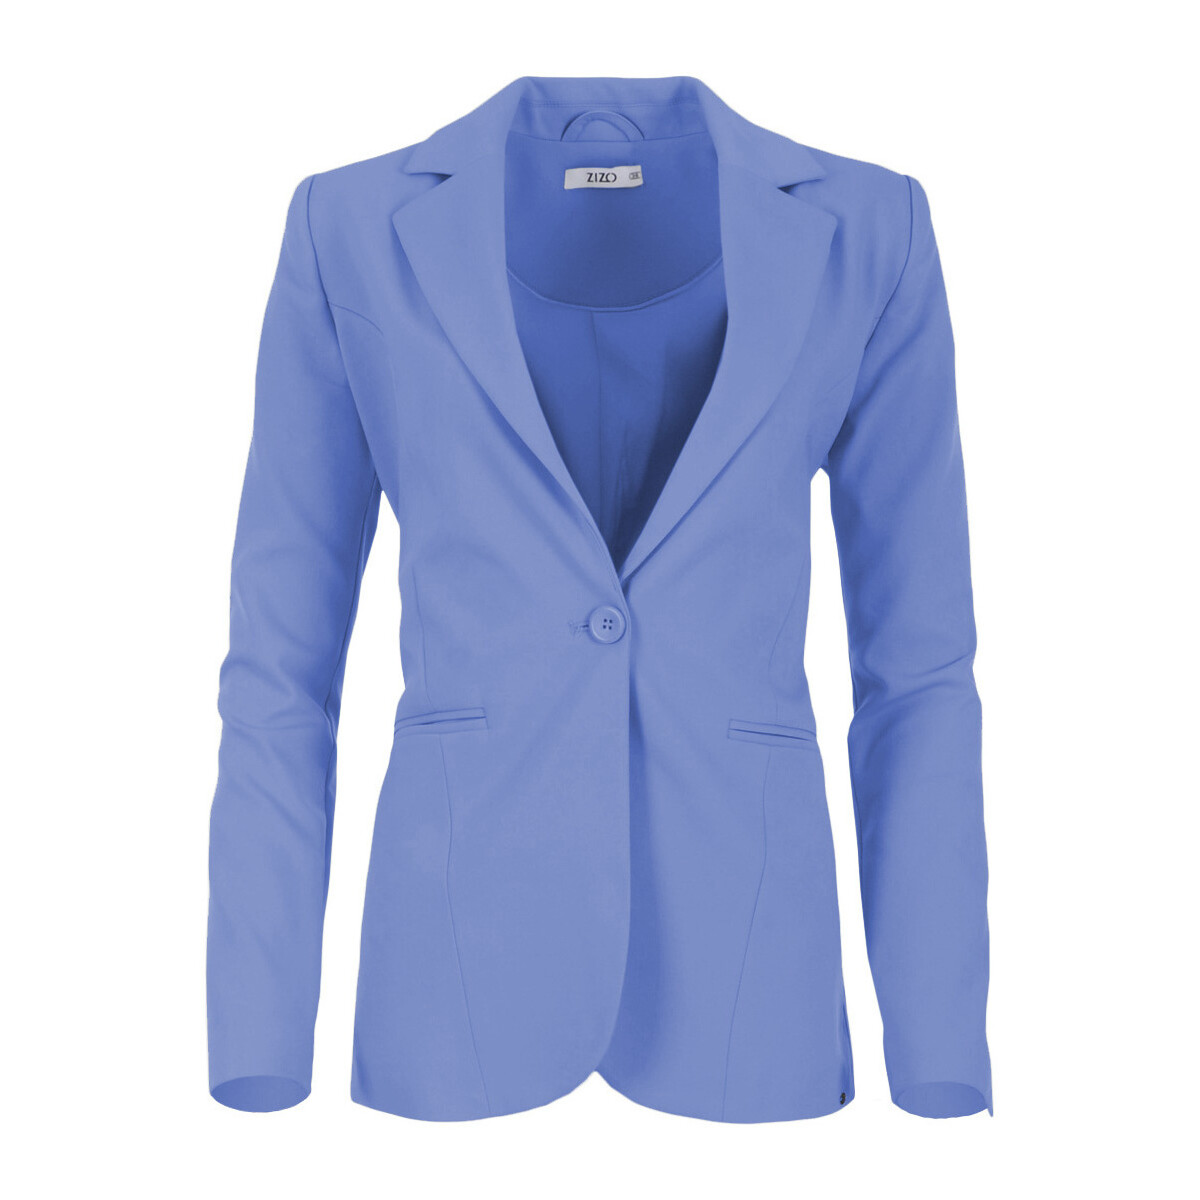 Textiel Dames Jasjes / Blazers Zizo Aricia blazer Spring Blue SP23.ARI.013 Blauw